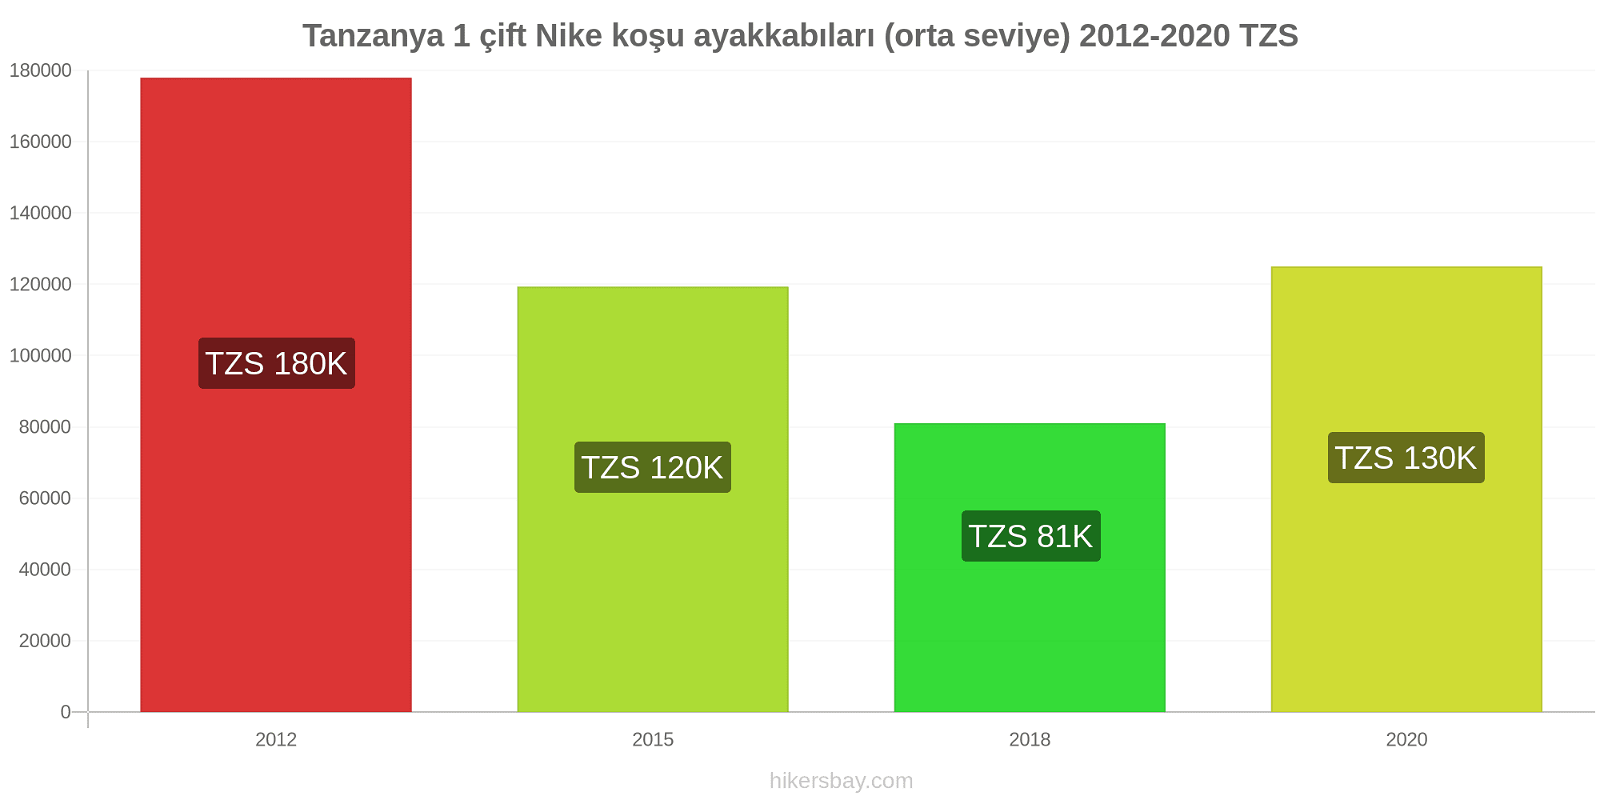 Tanzanya fiyat değişiklikleri 1 çift Nike koşu ayakkabıları (orta seviye) hikersbay.com